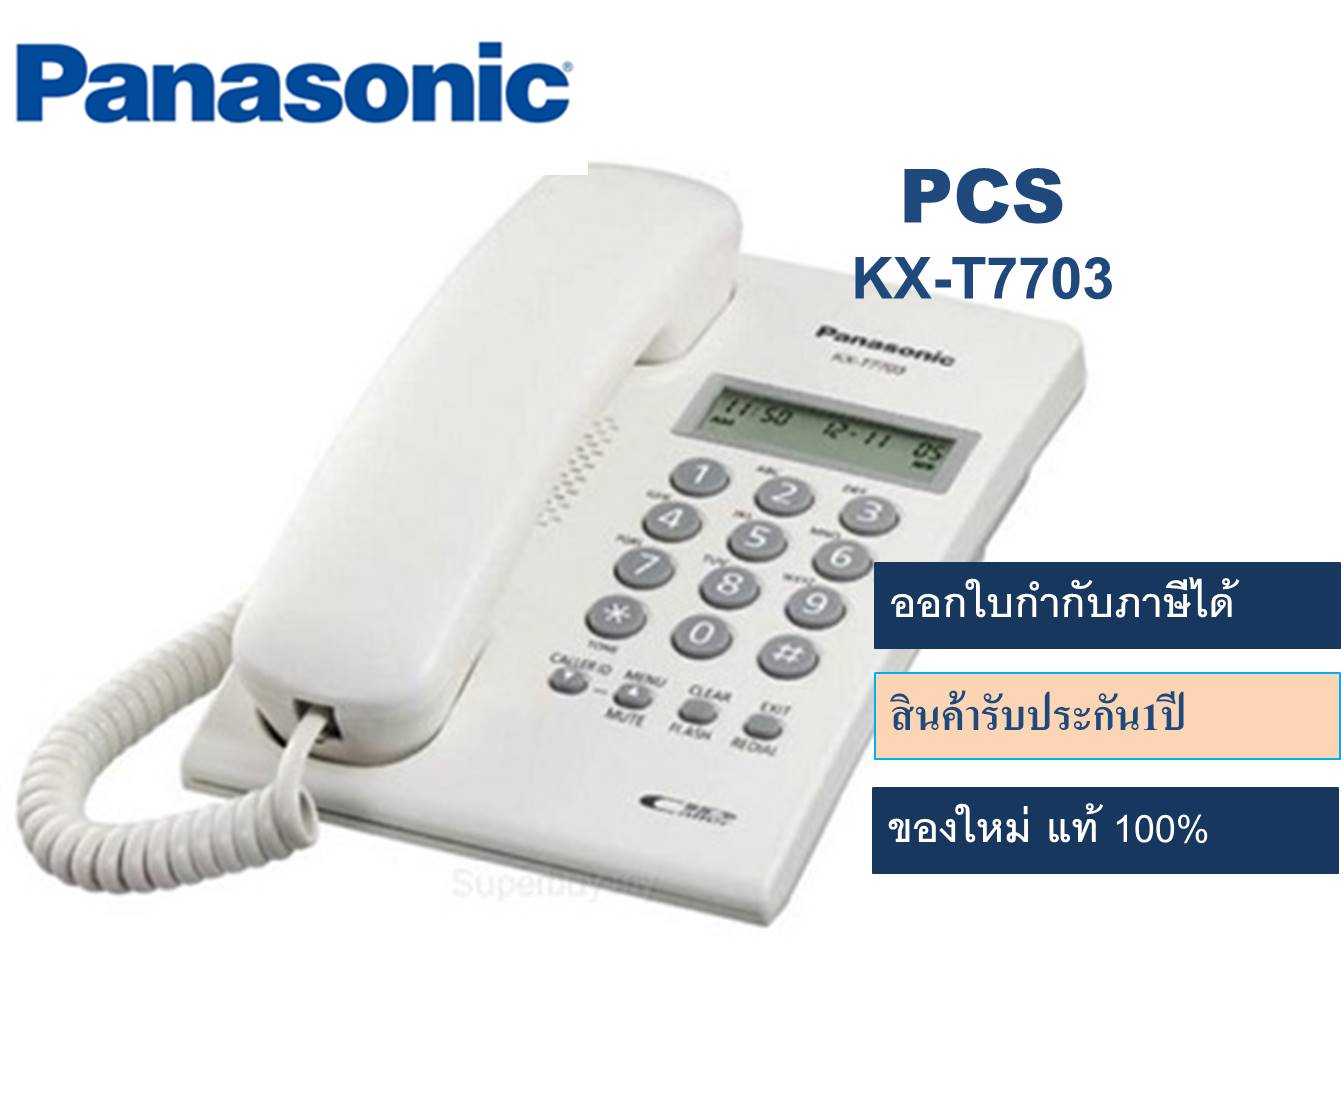 Panasonic เครื่องโทรศัพท์KX-T7703  โทรศัพท์บ้านแบบตั้งโต๊ะ โทรศัพท์บ้าน ออฟฟิศ สำนักงาน ใช้ร่วมกับตู้สาขา